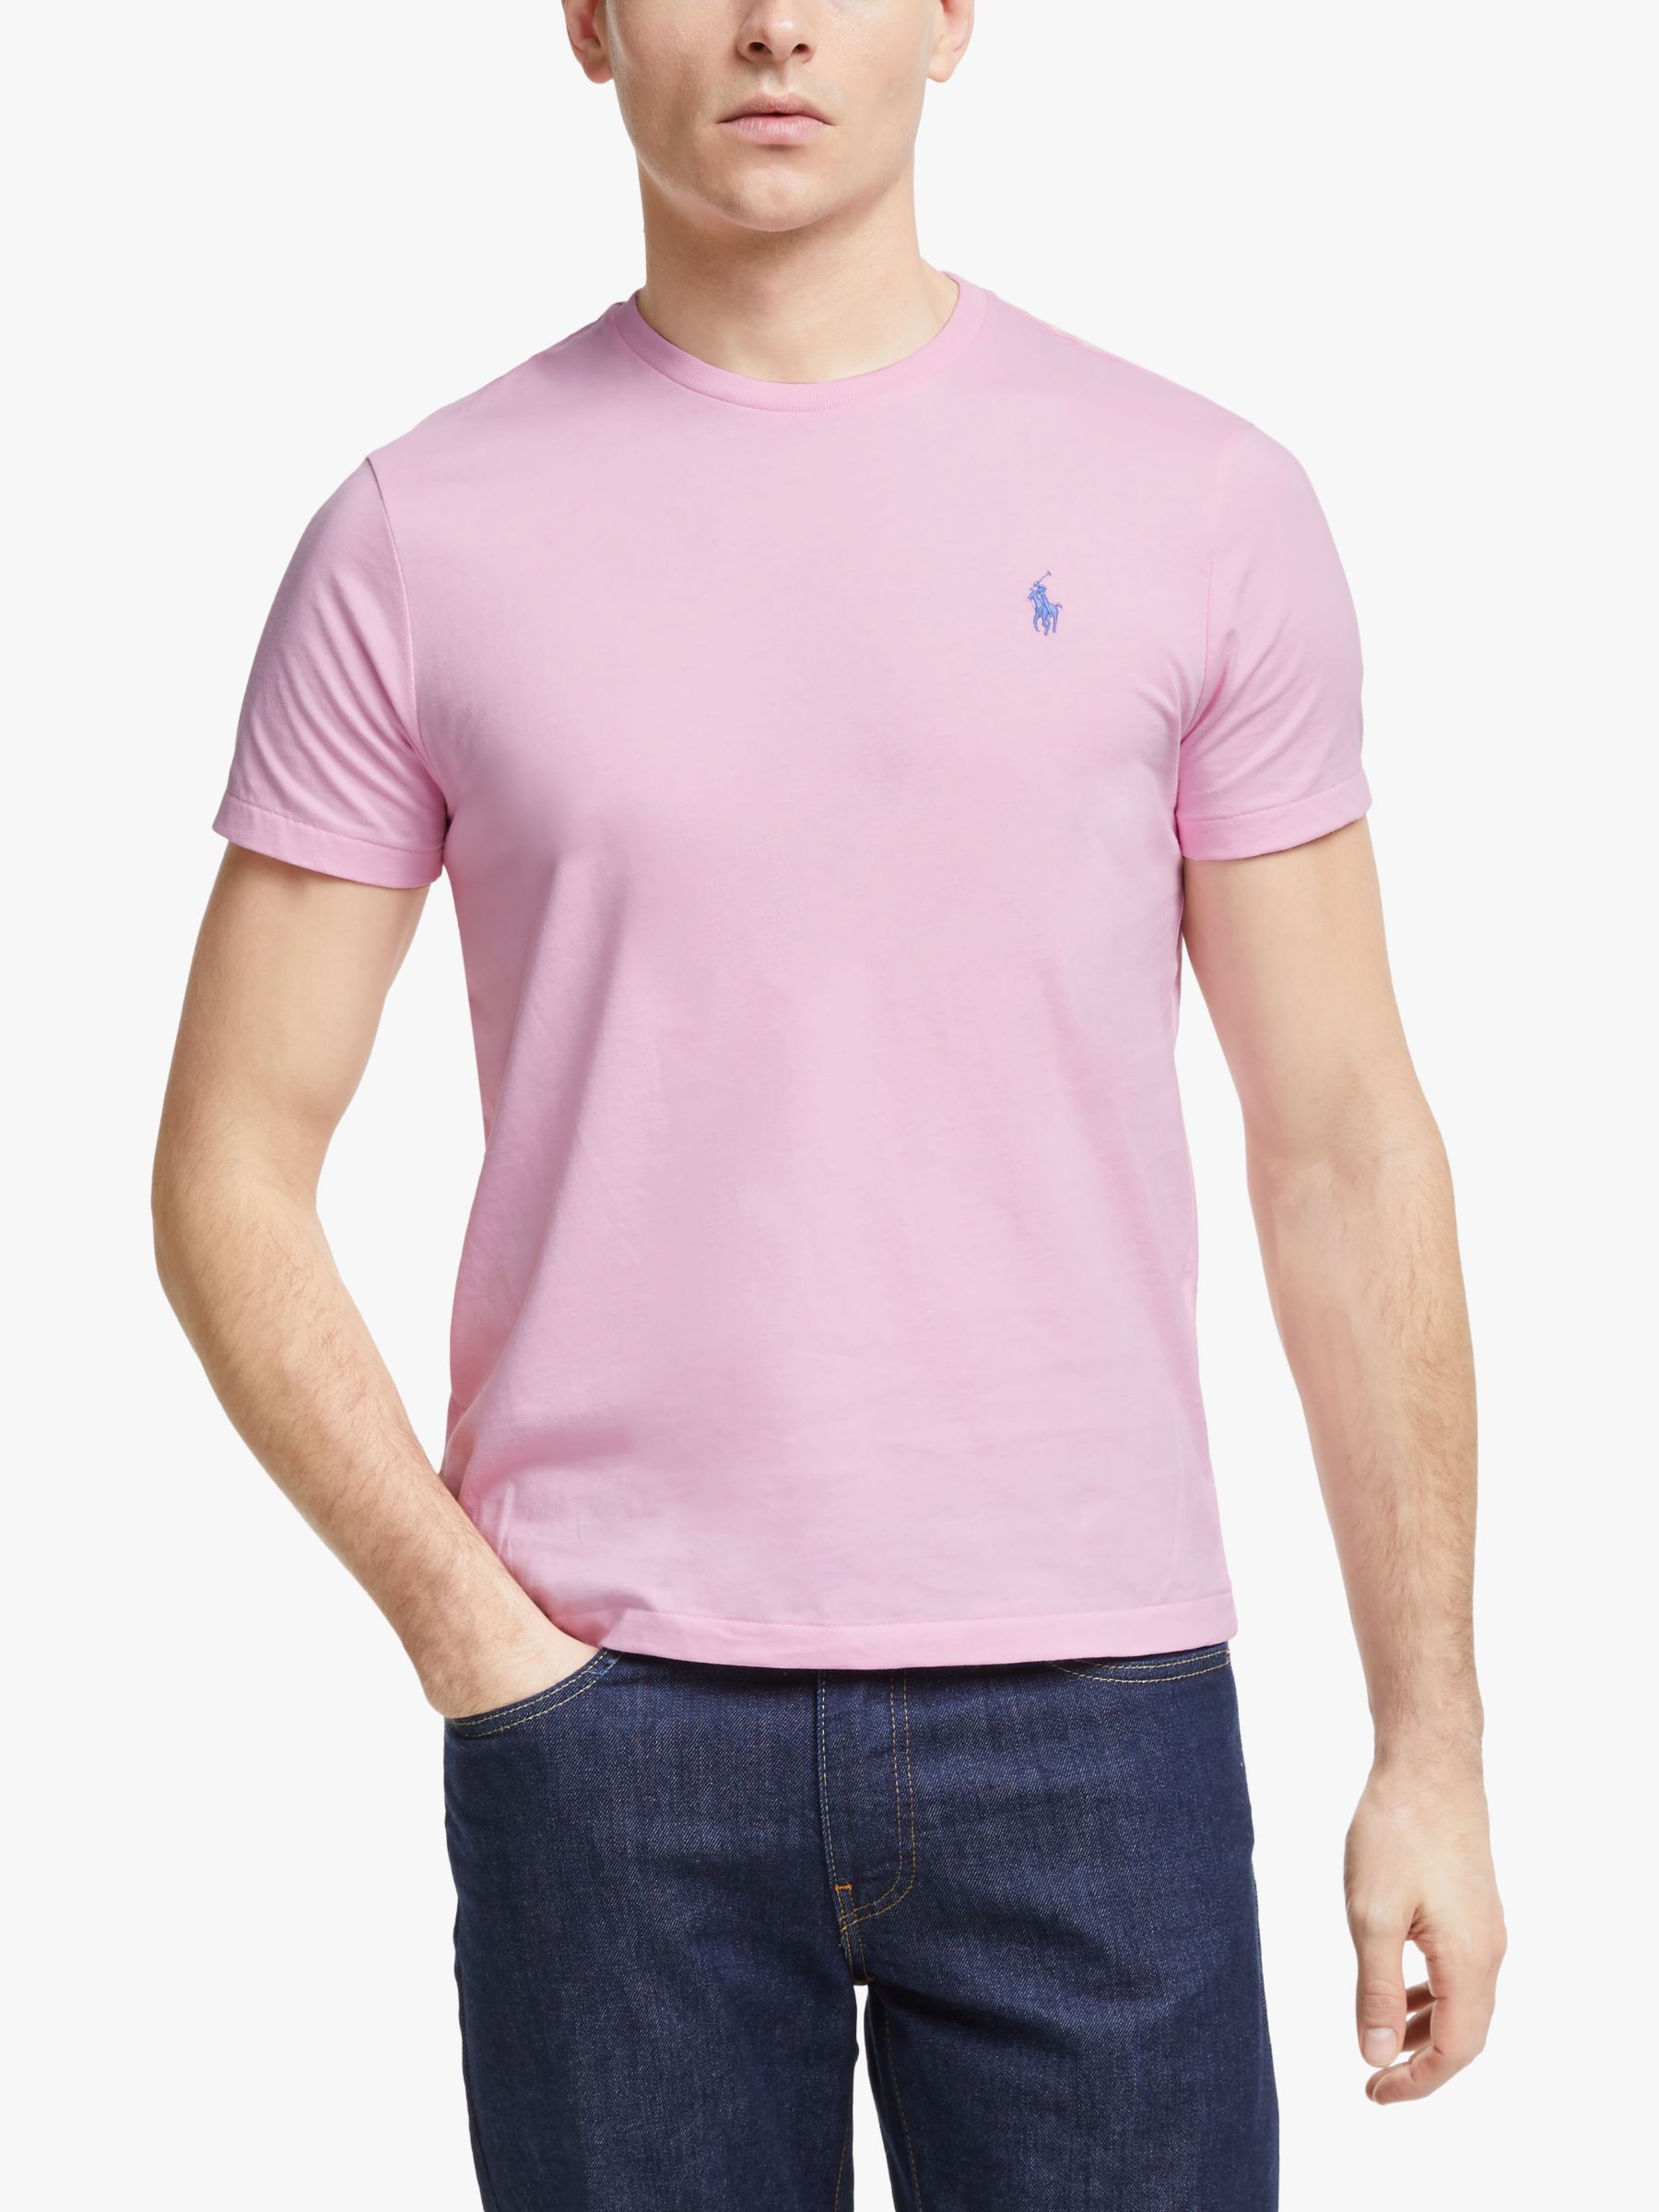 pink ralph lauren t shirt